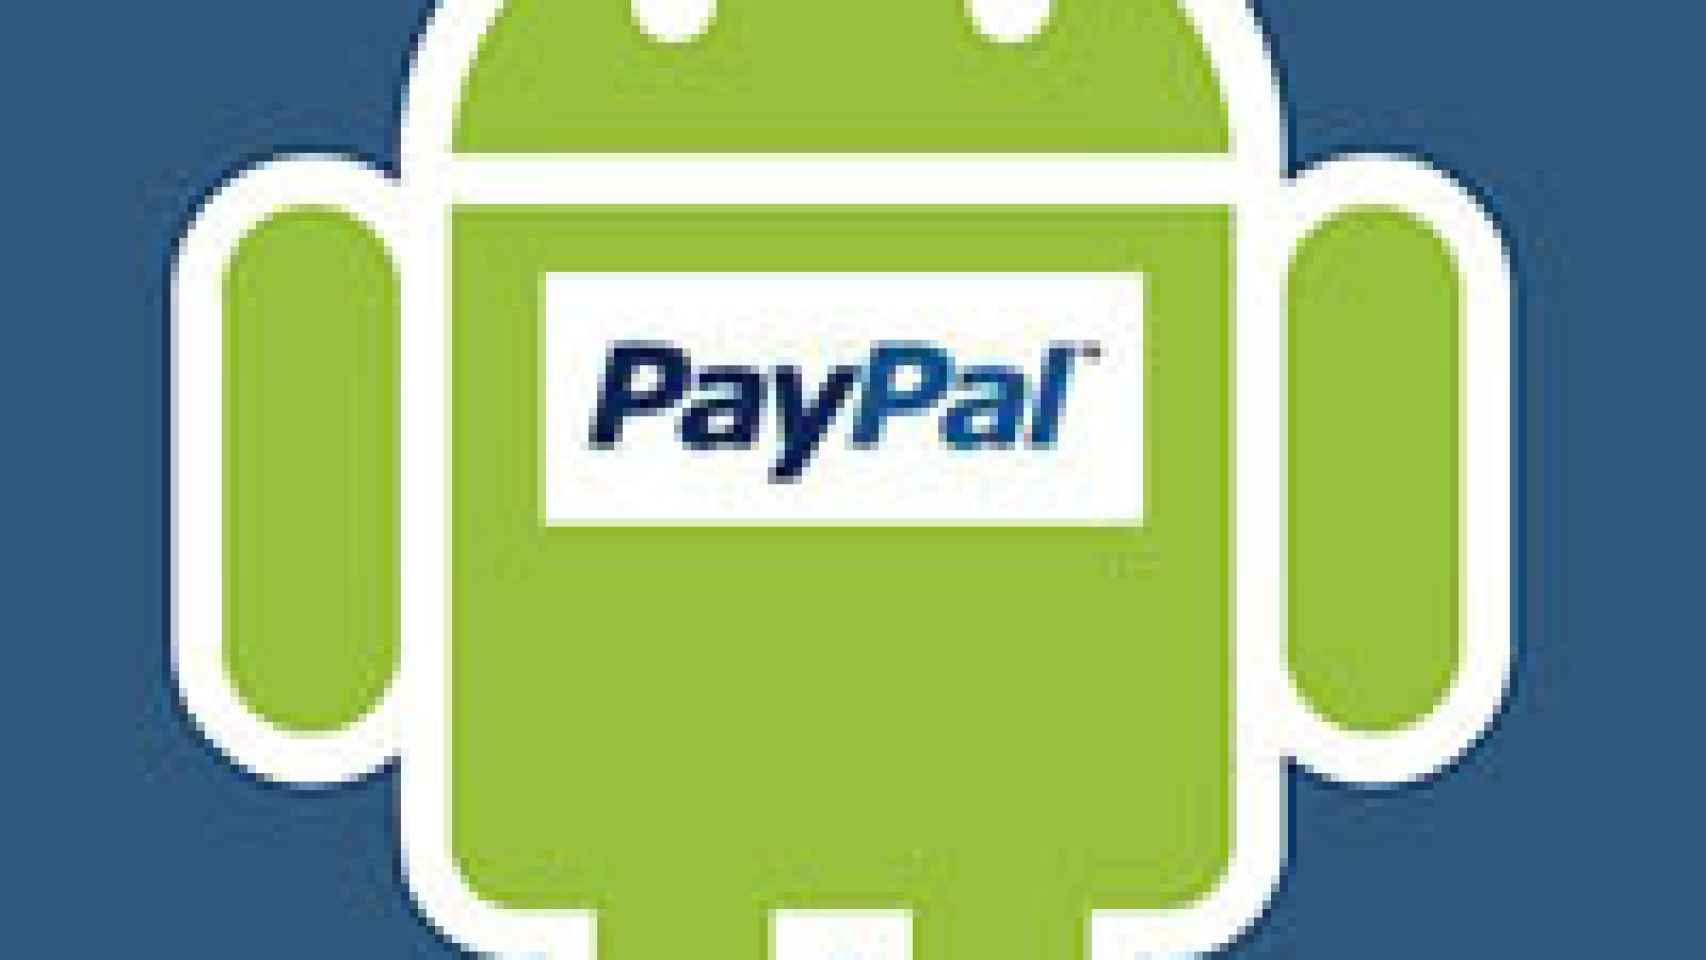 Paypal llegará al Android Market